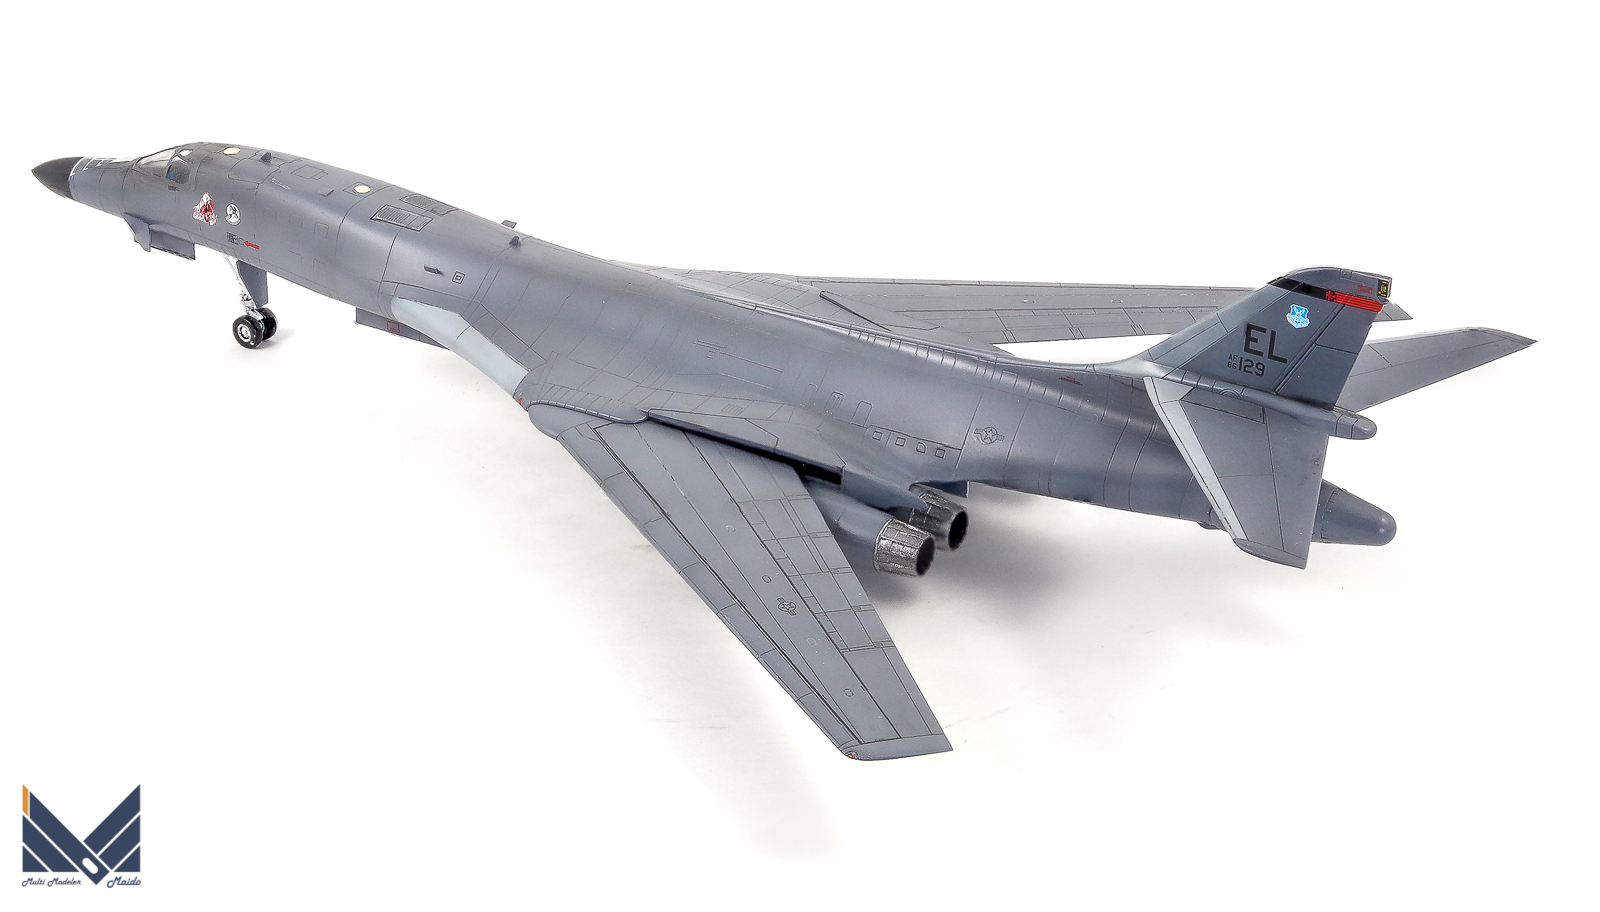 アカデミー 1/144 B-1B ランサー 完成品 academy 飛行機模型完成品